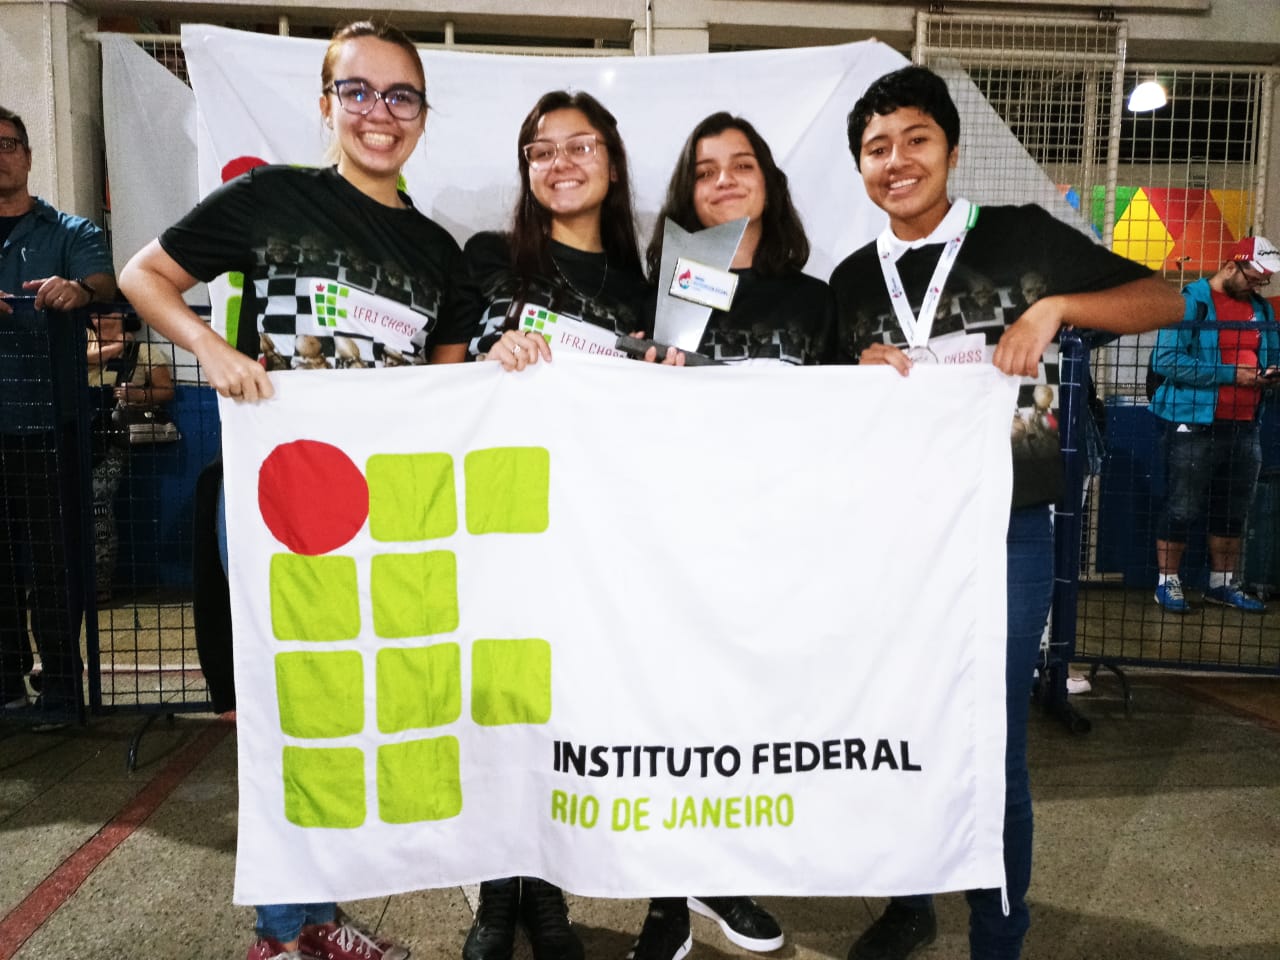 quatro alunos sorrindo seguram a sua frente uma bandeira do IFRJ